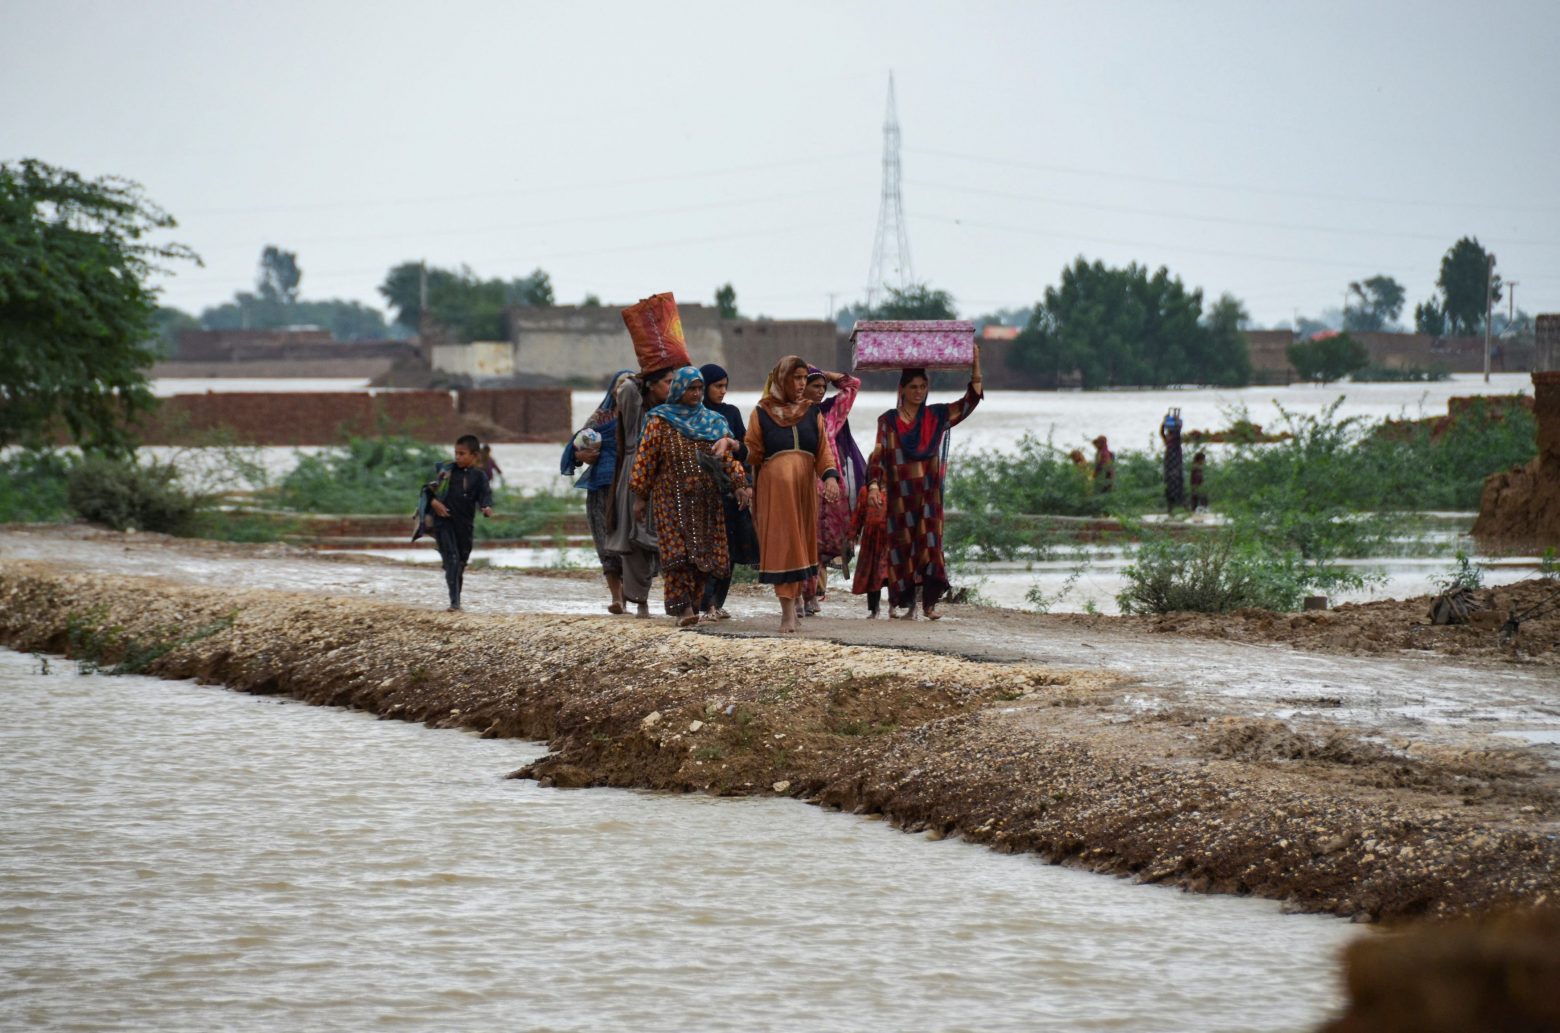 Πακιστάν: Η μισή χώρα έχει καλυφθεί από το νερό - Πάνω από 1.000 νεκροί και 33 εκατ. εκτοπισμένοι από τις πλημμύρες